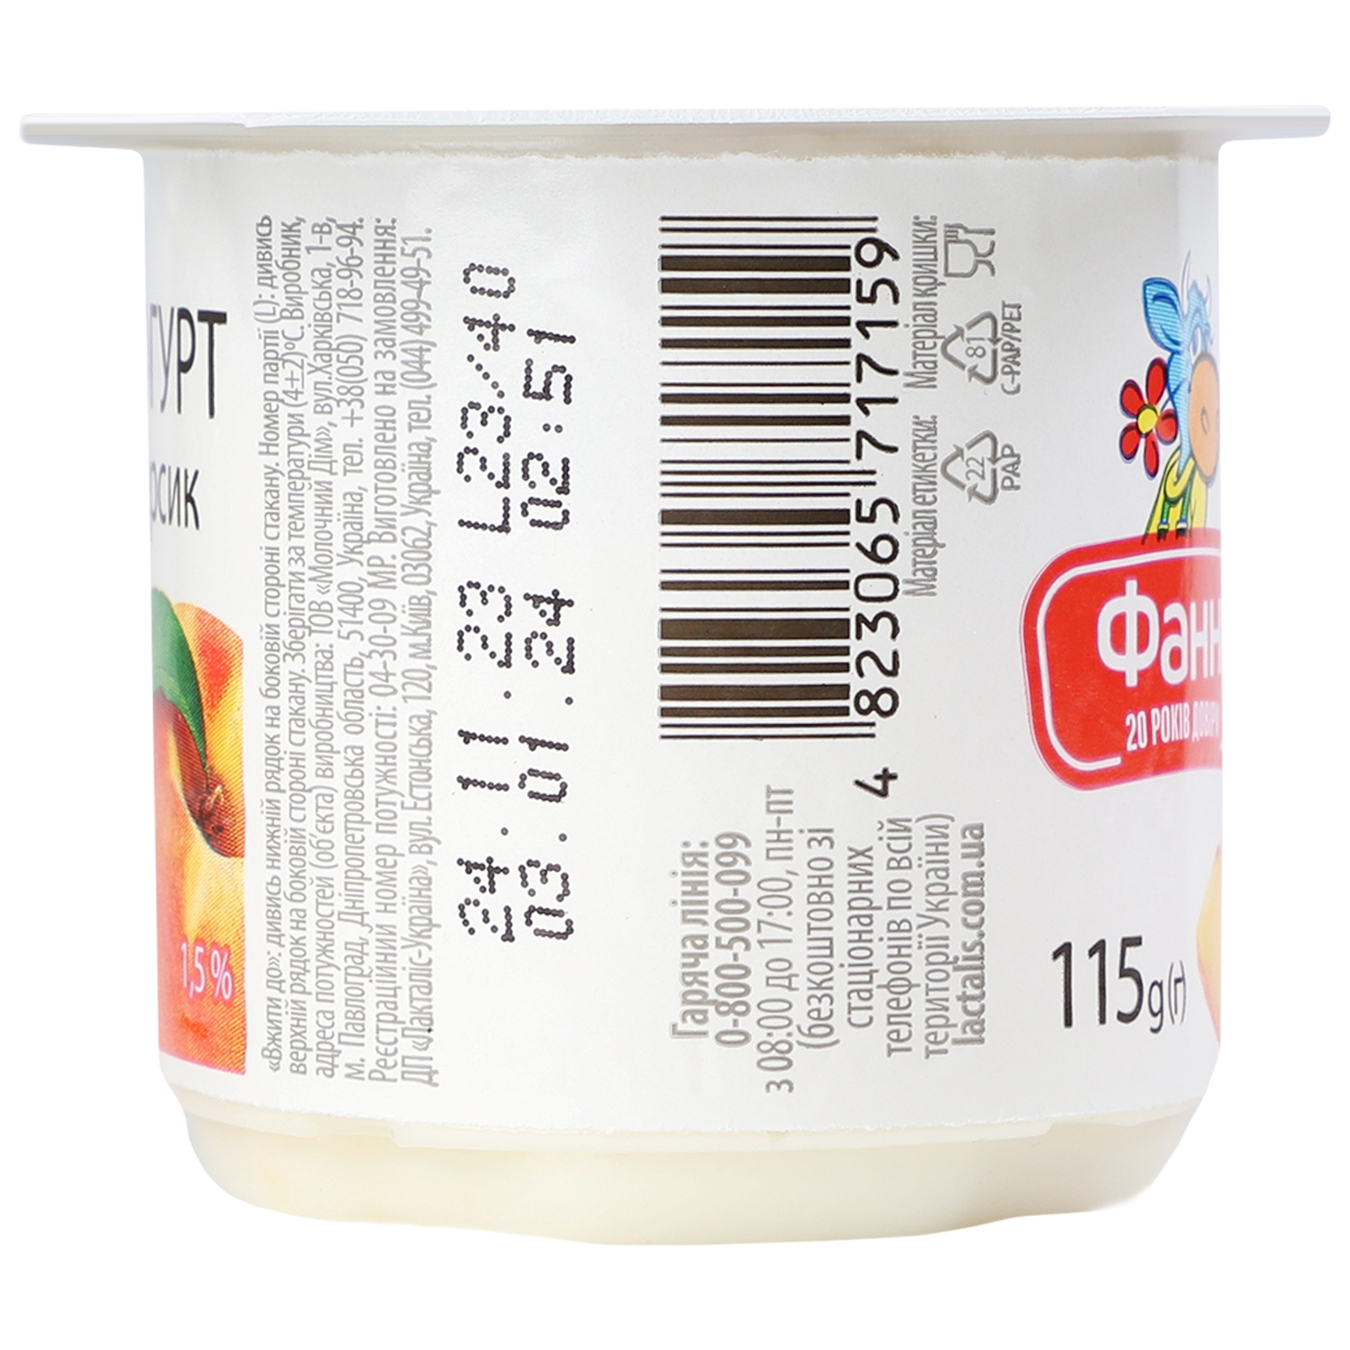 Йогурт Фанни с наполнителем персик стаканчик 1,5% 115г 3